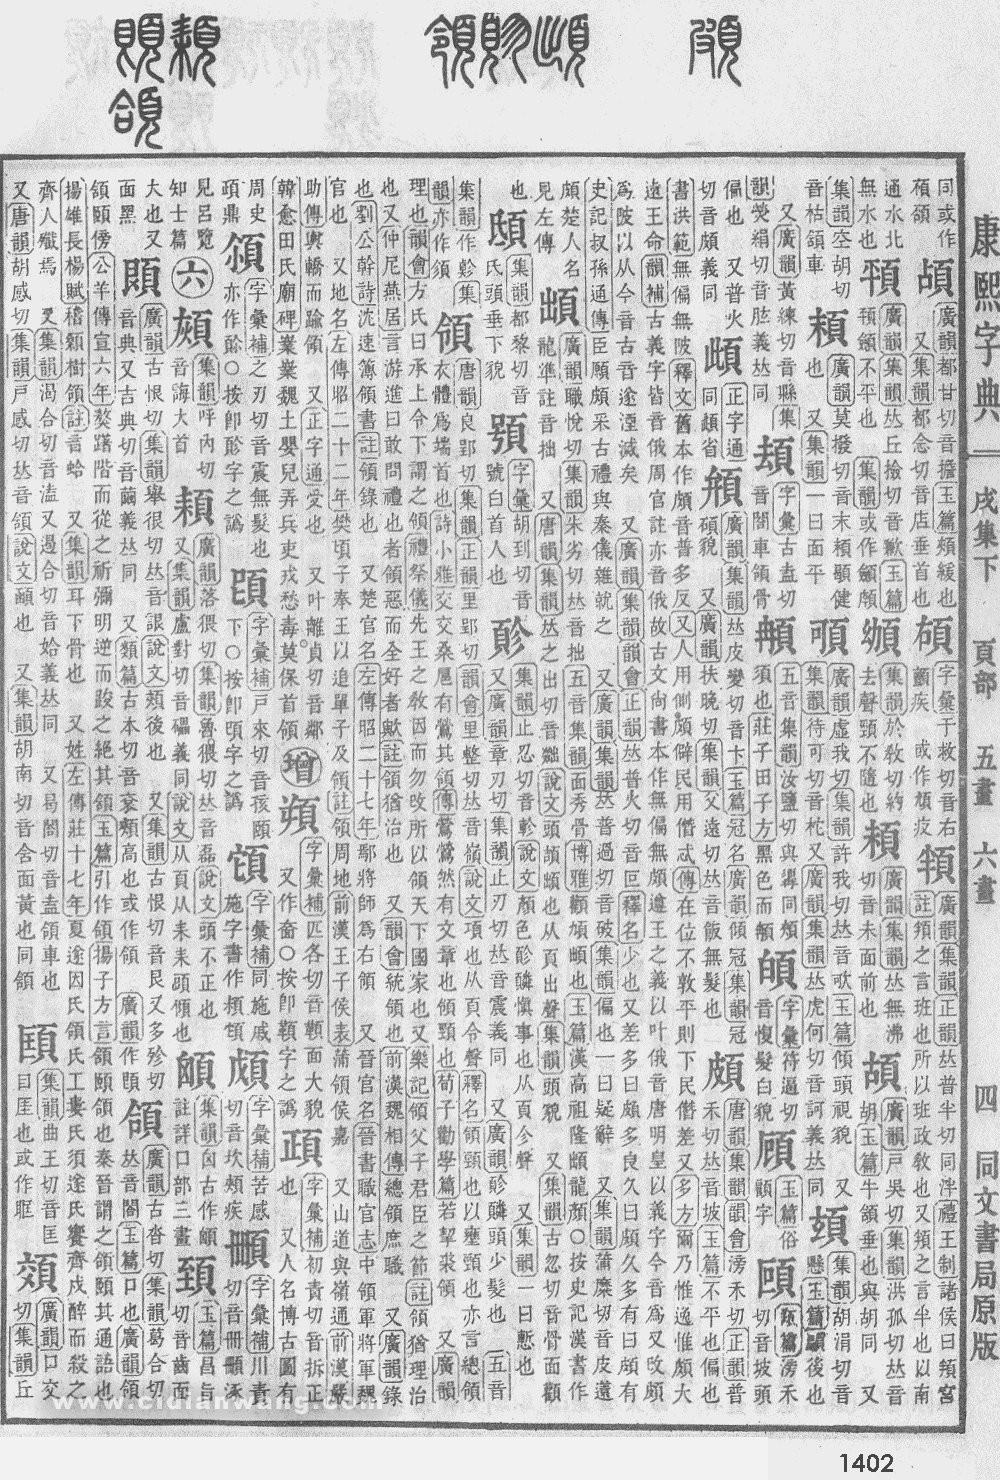 康熙字典掃描版第1402頁